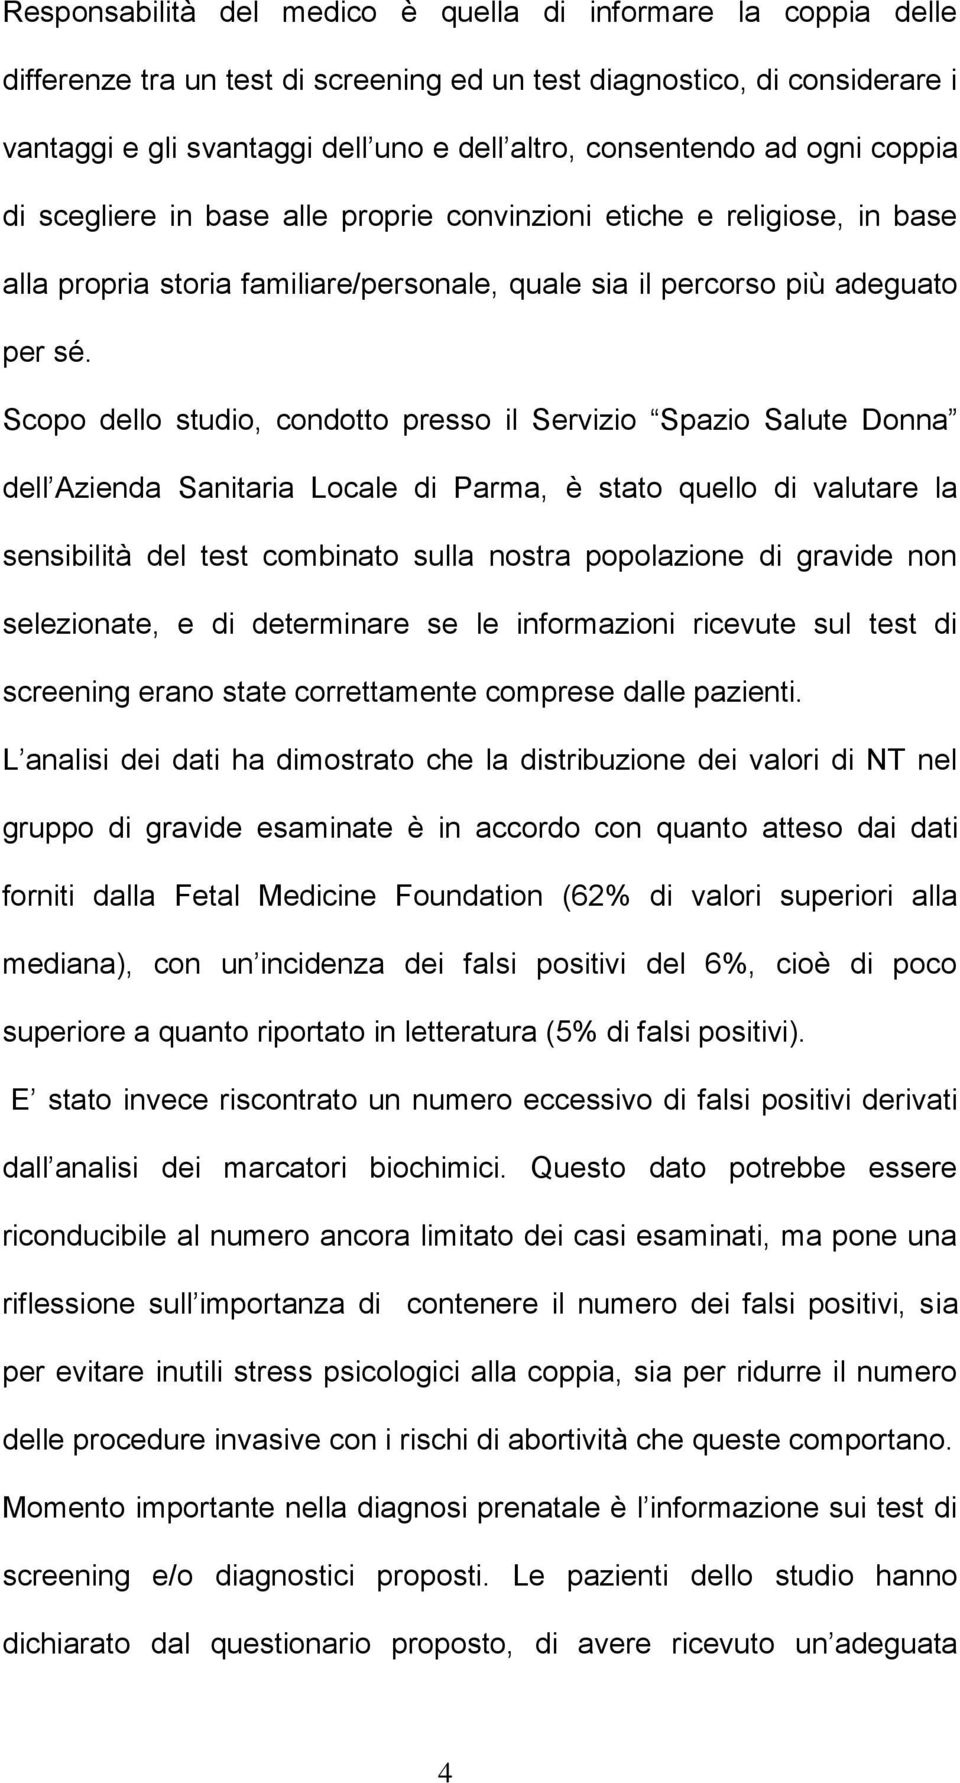 Scopo dello studio, condotto presso il Servizio Spazio Salute Donna dell Azienda Sanitaria Locale di Parma, è stato quello di valutare la sensibilità del test combinato sulla nostra popolazione di